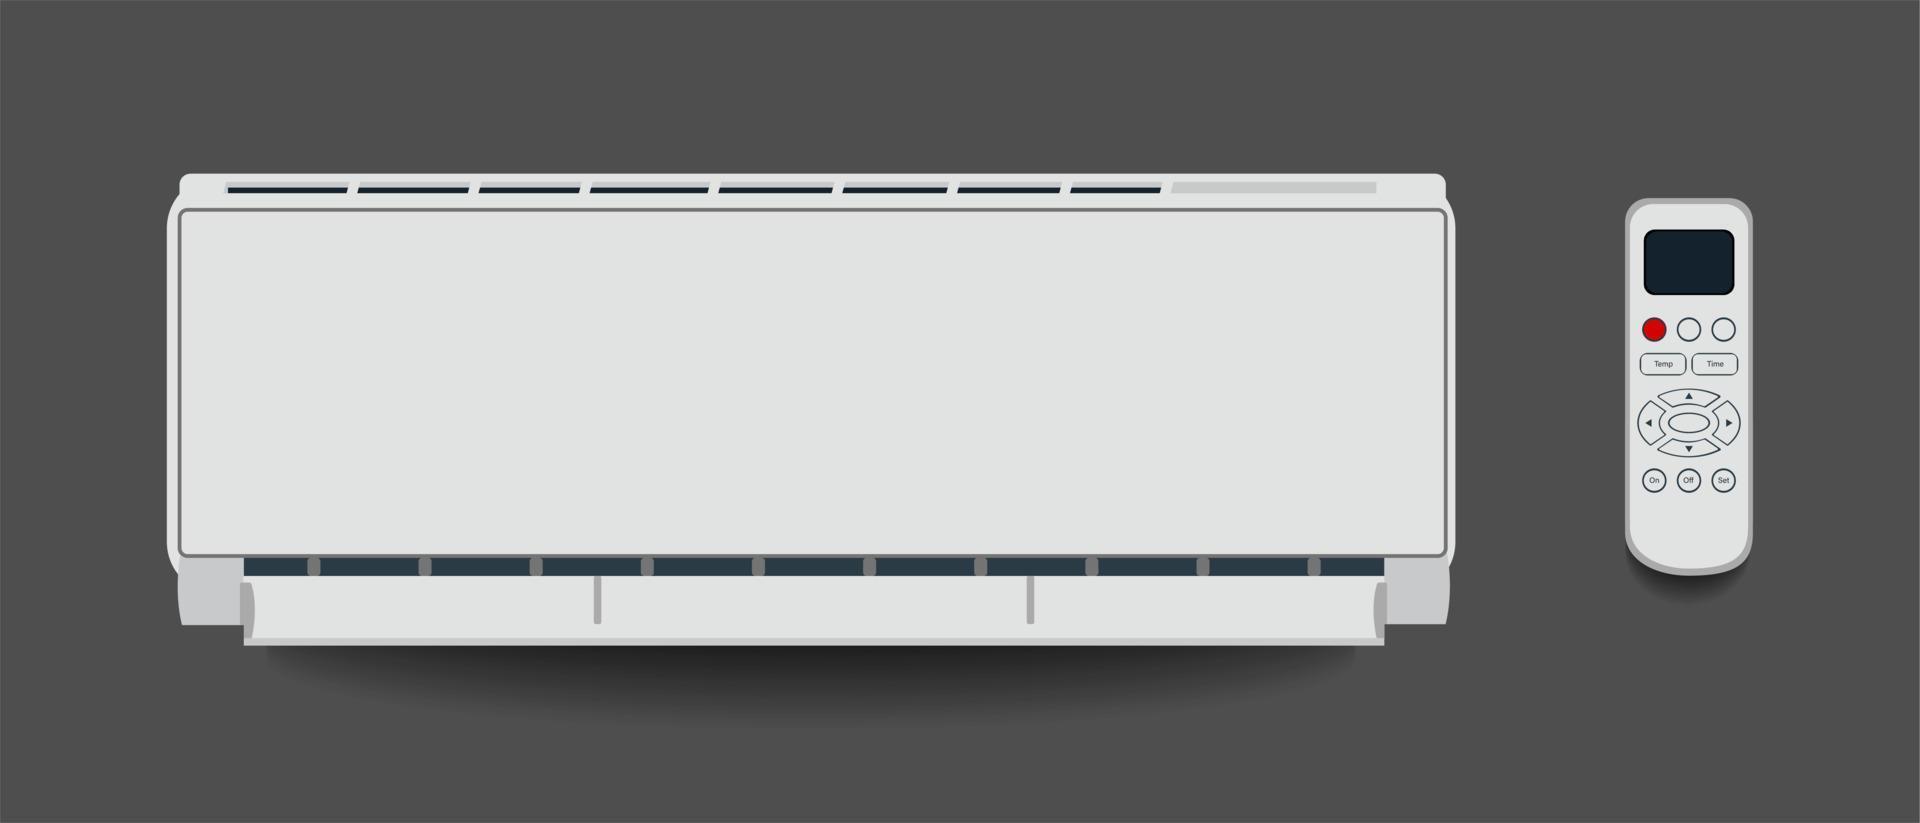 climatiseur blanc isolé chauffage ventilation et climatisation illustration vectorielle dans un style plat vecteur